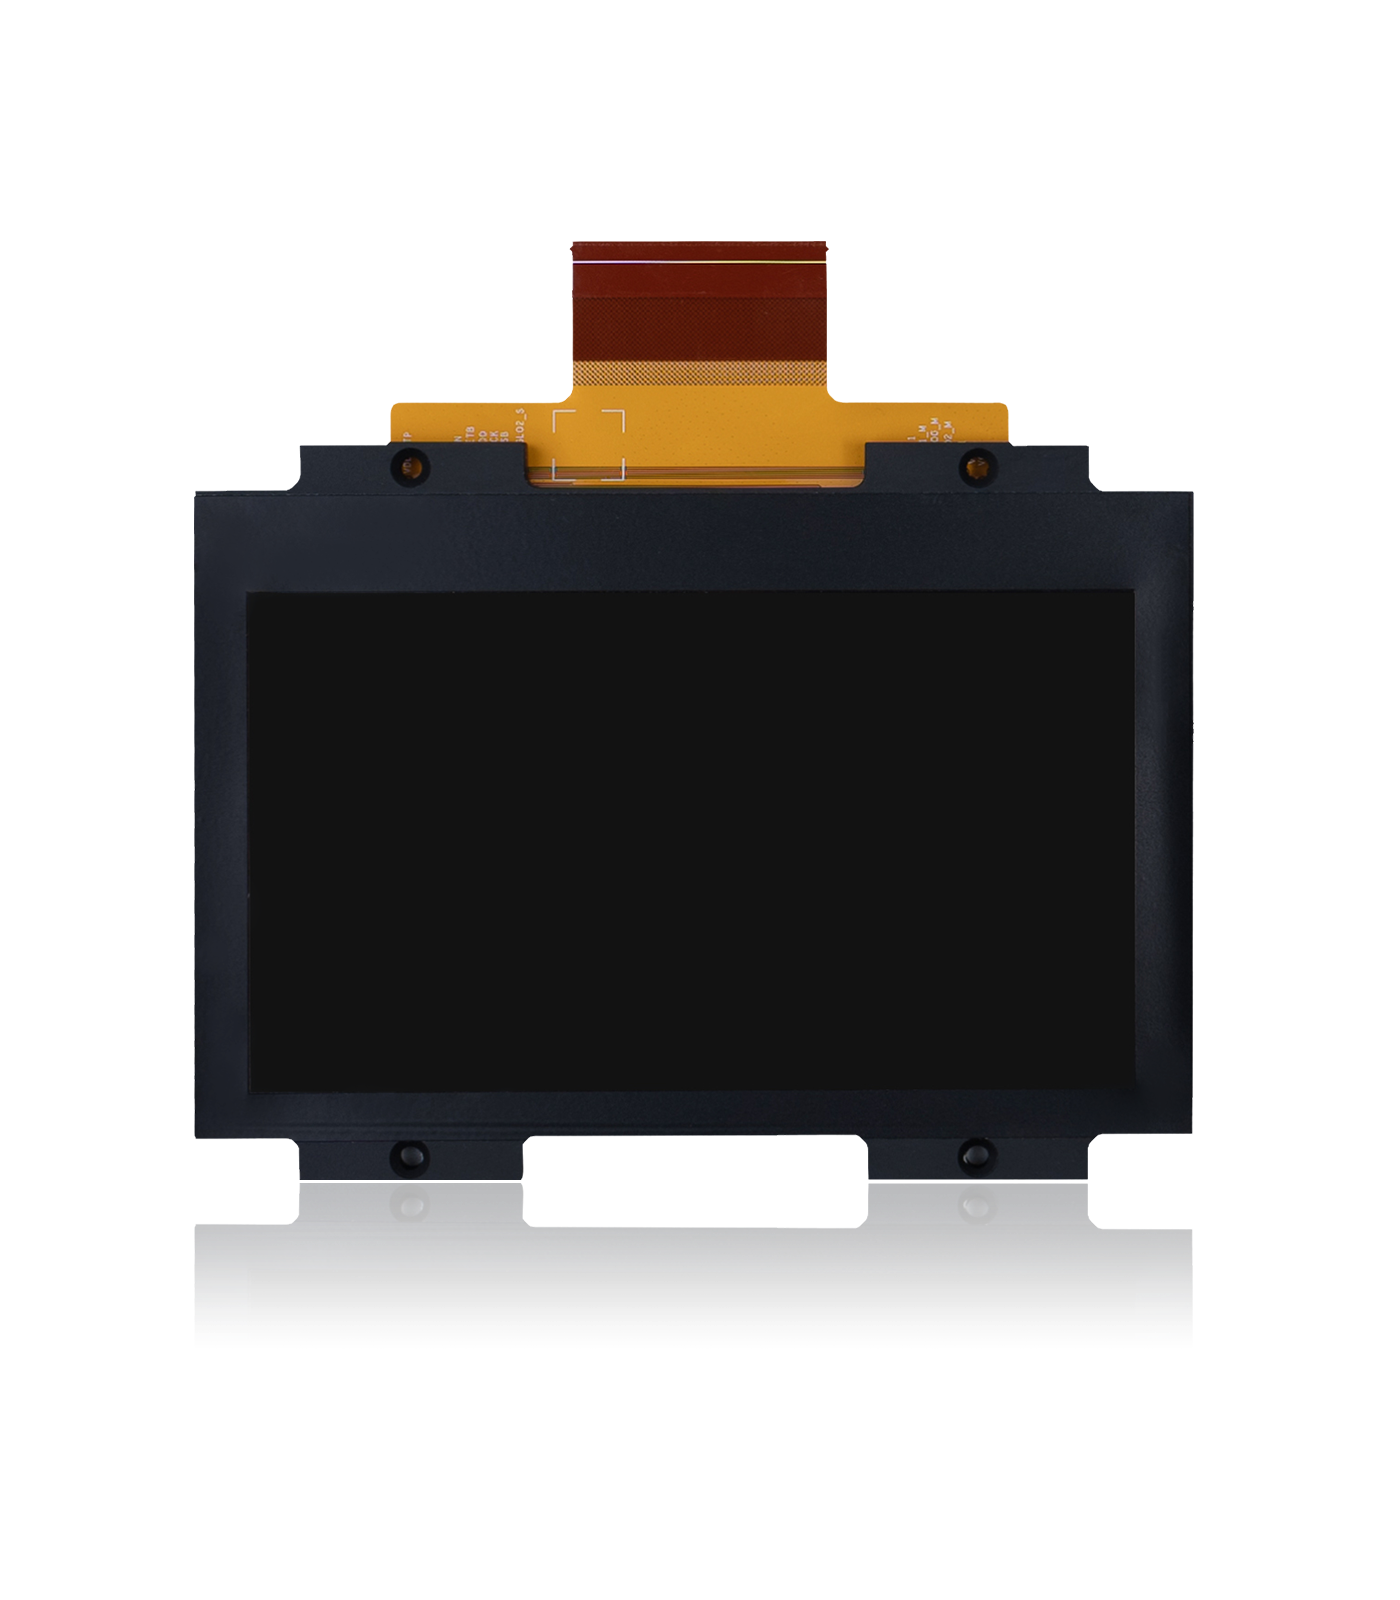 Phrozen Sonic 4K 3D Printer Mono 6.1" LCD Screen